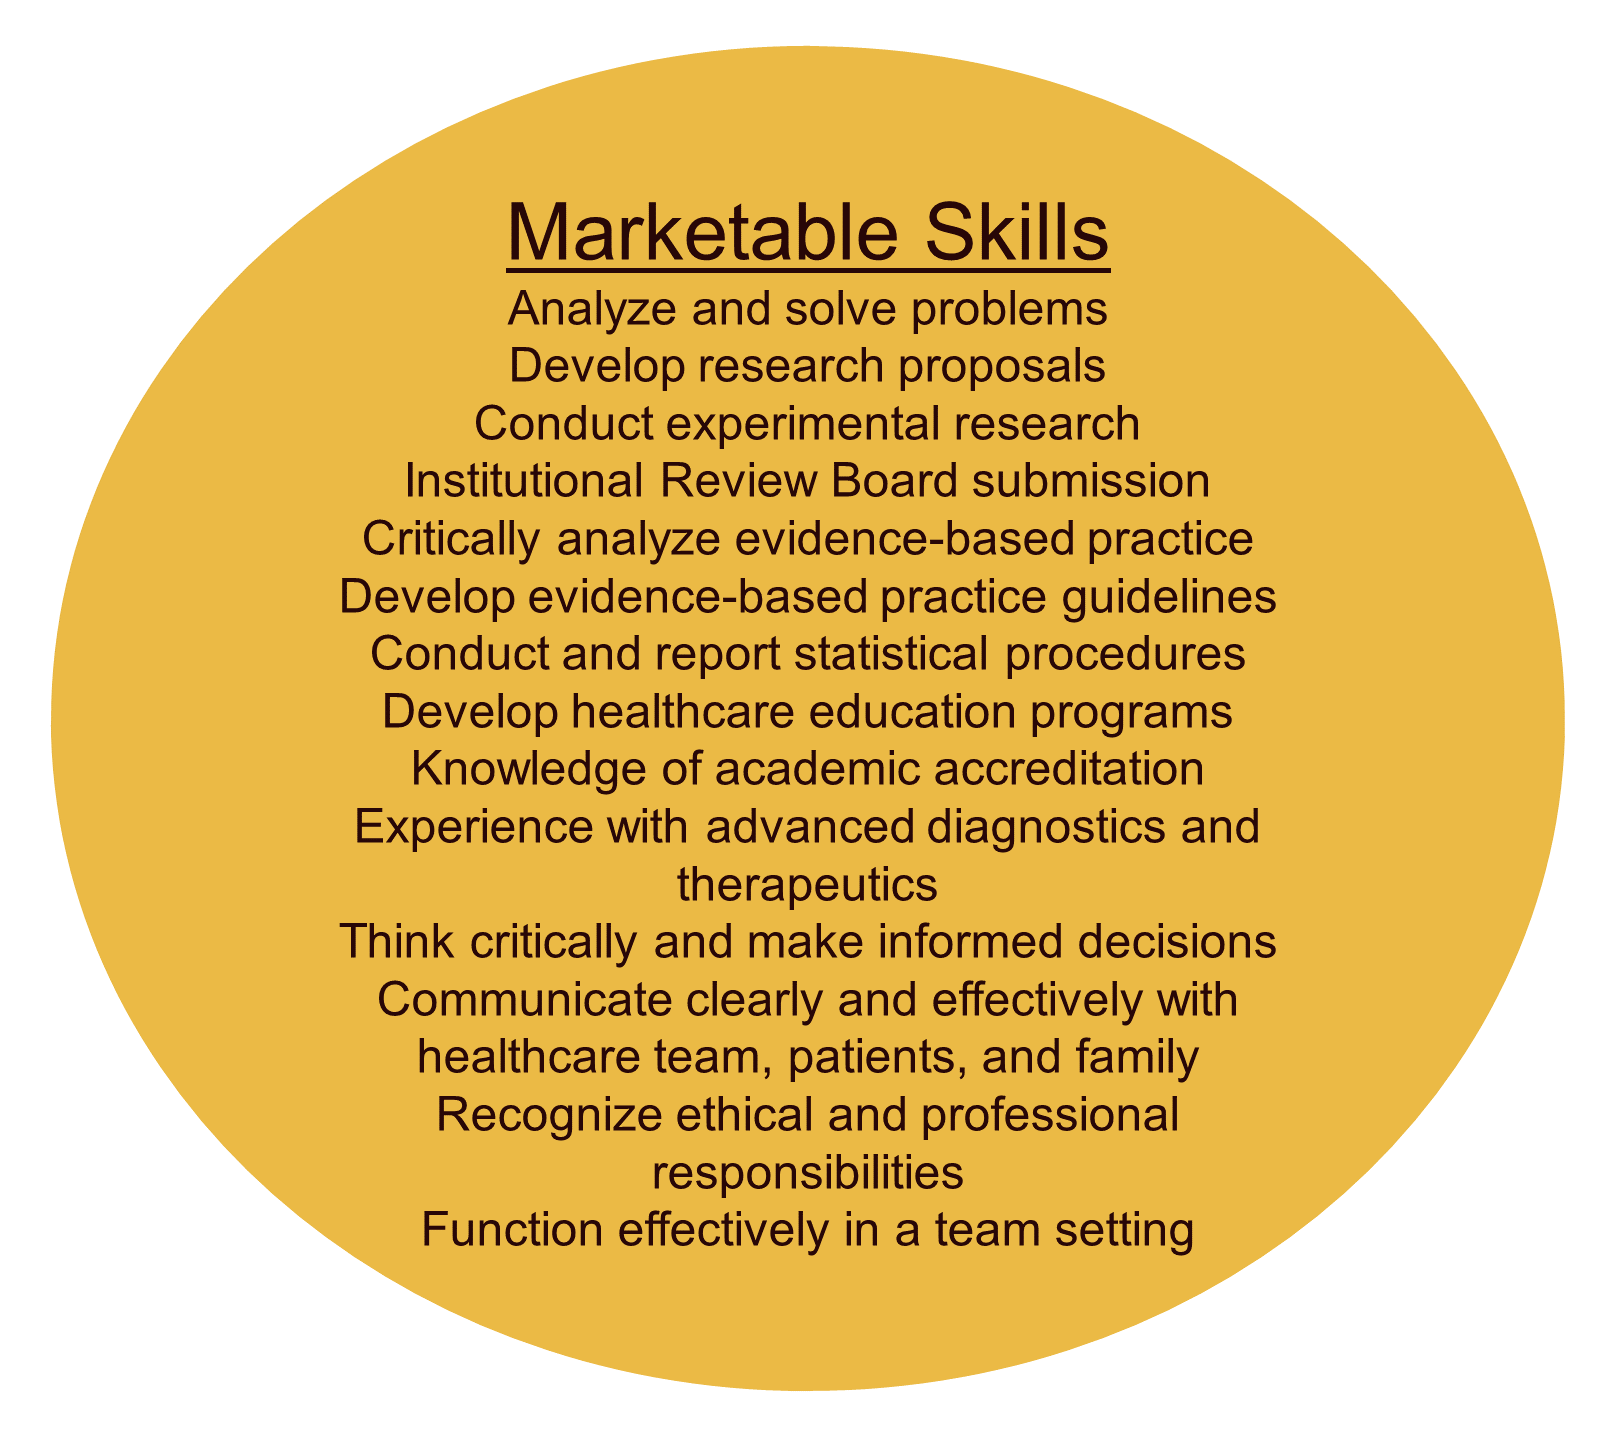 Marketable Skills